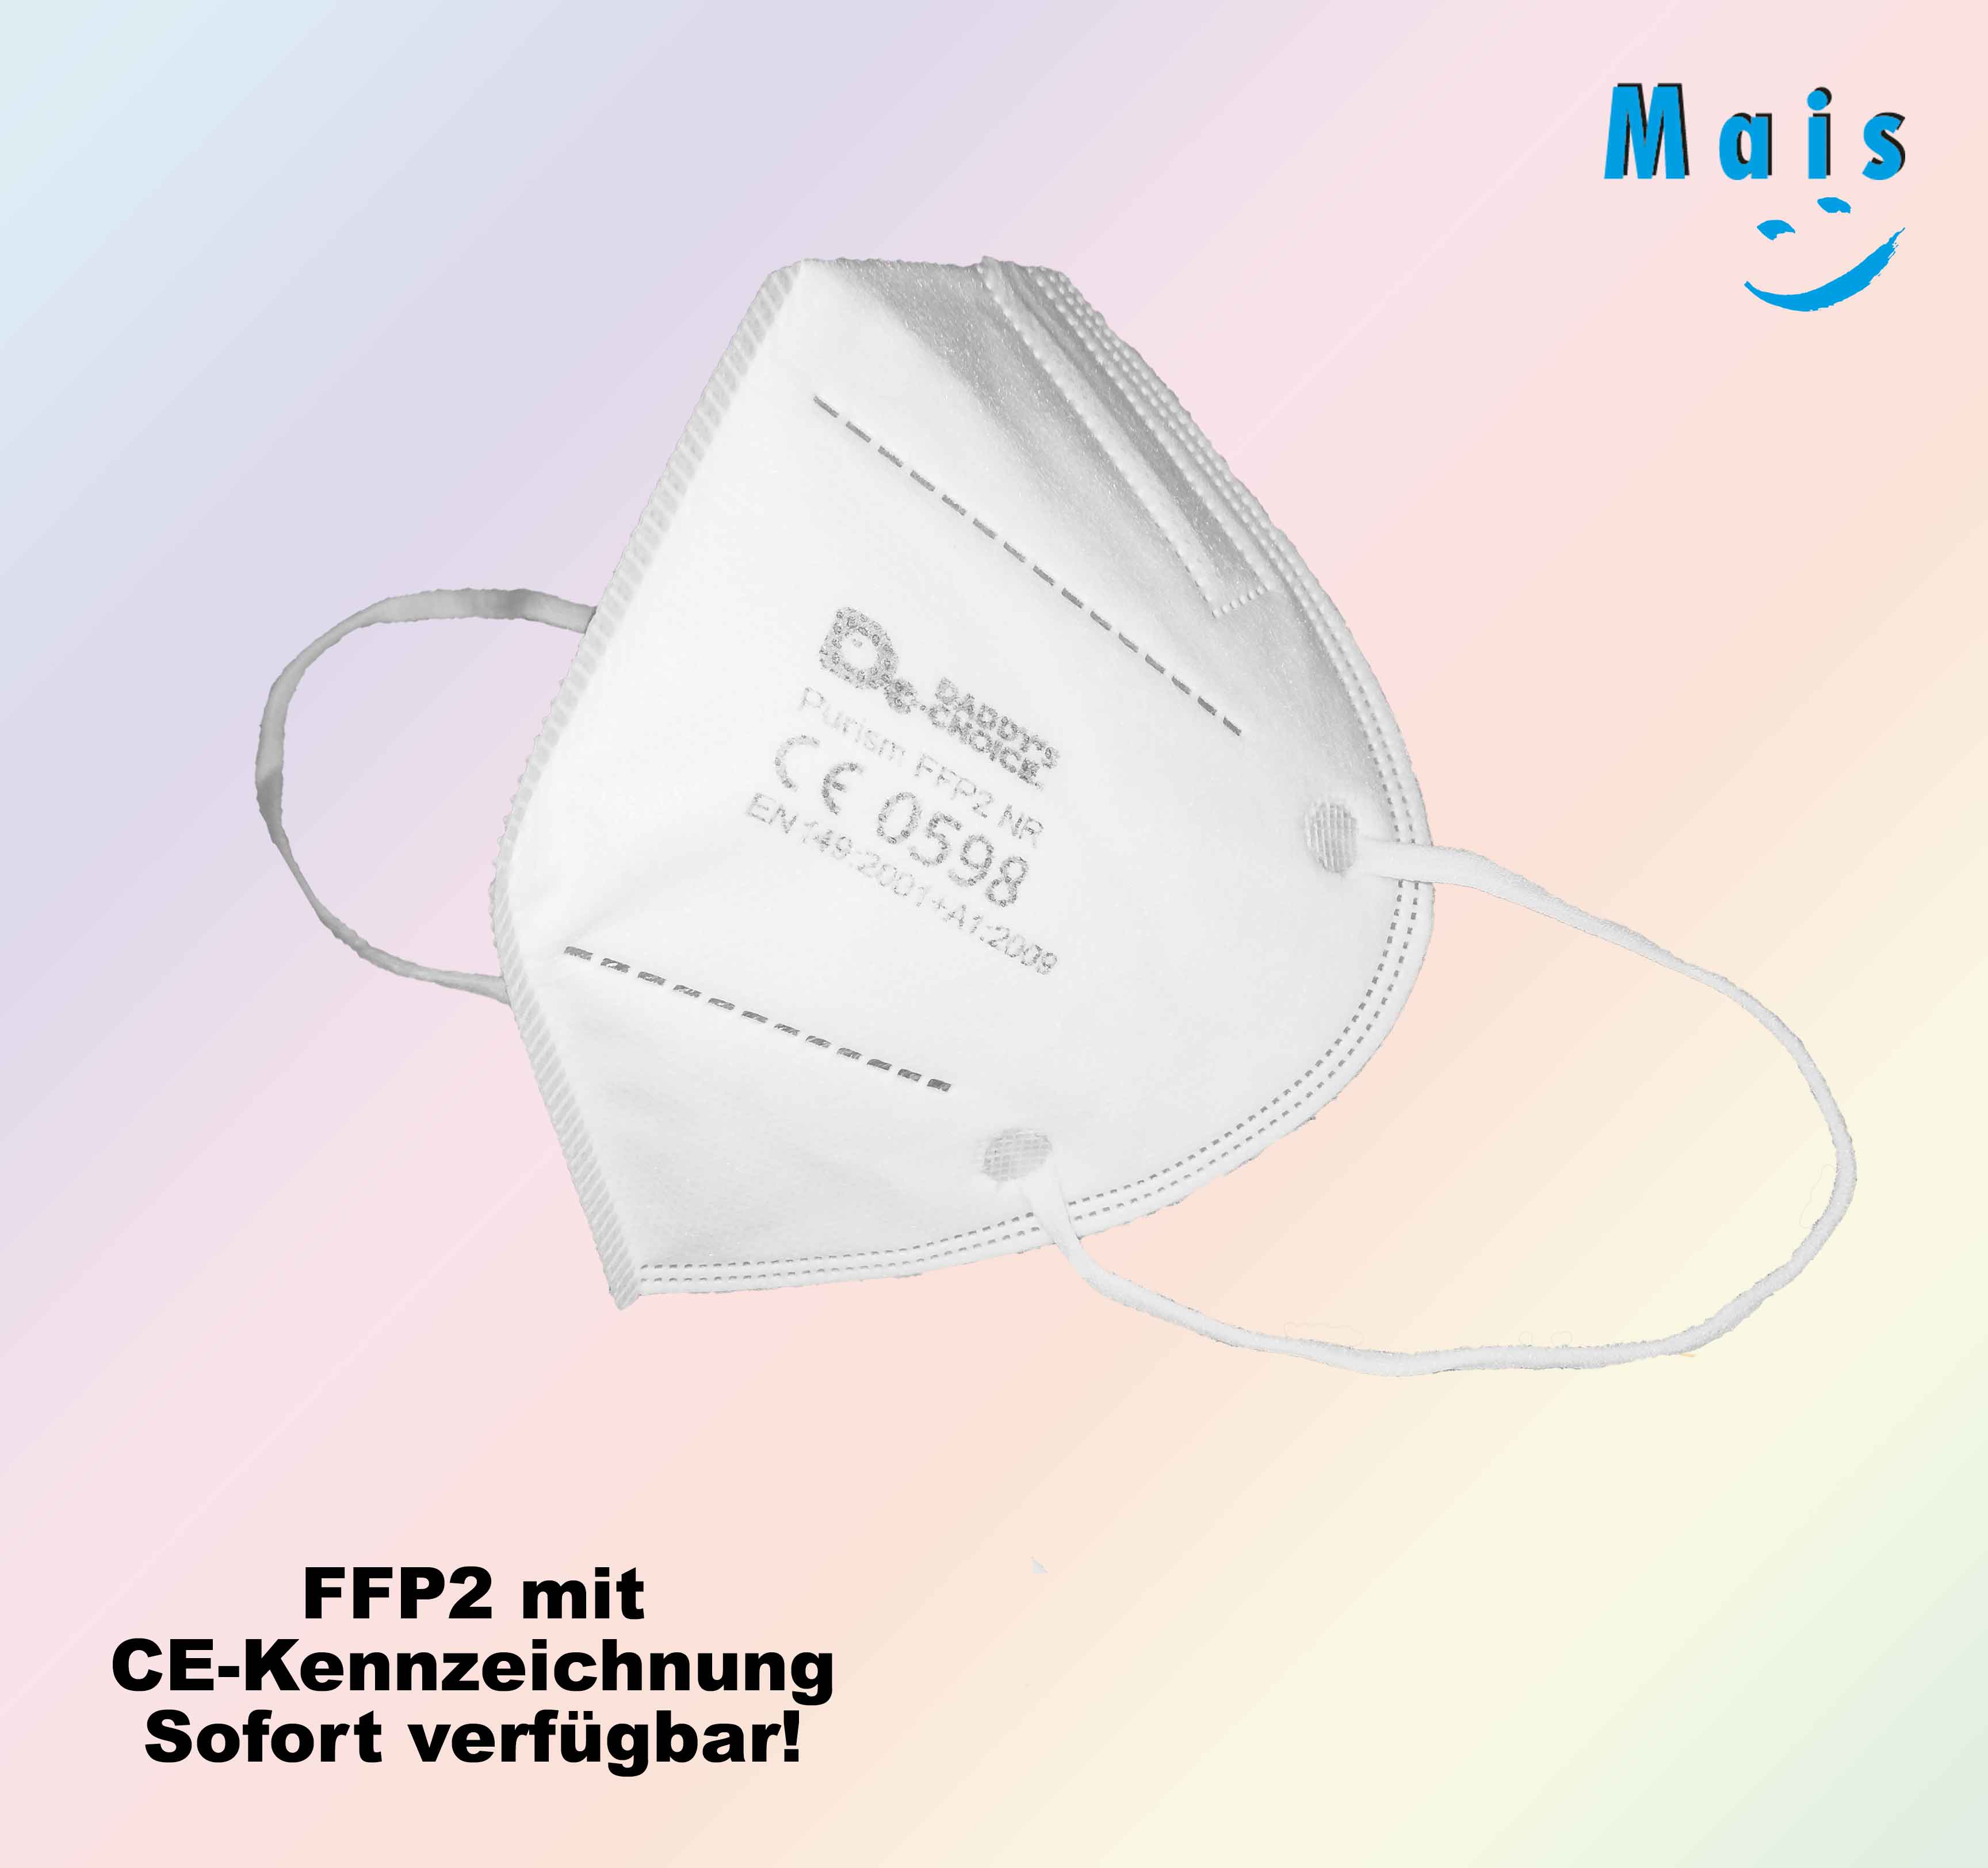 FFP2 Masken mit CE-Kennzeichnung sofort in allen Filialen des reha team Mais verfügbar!